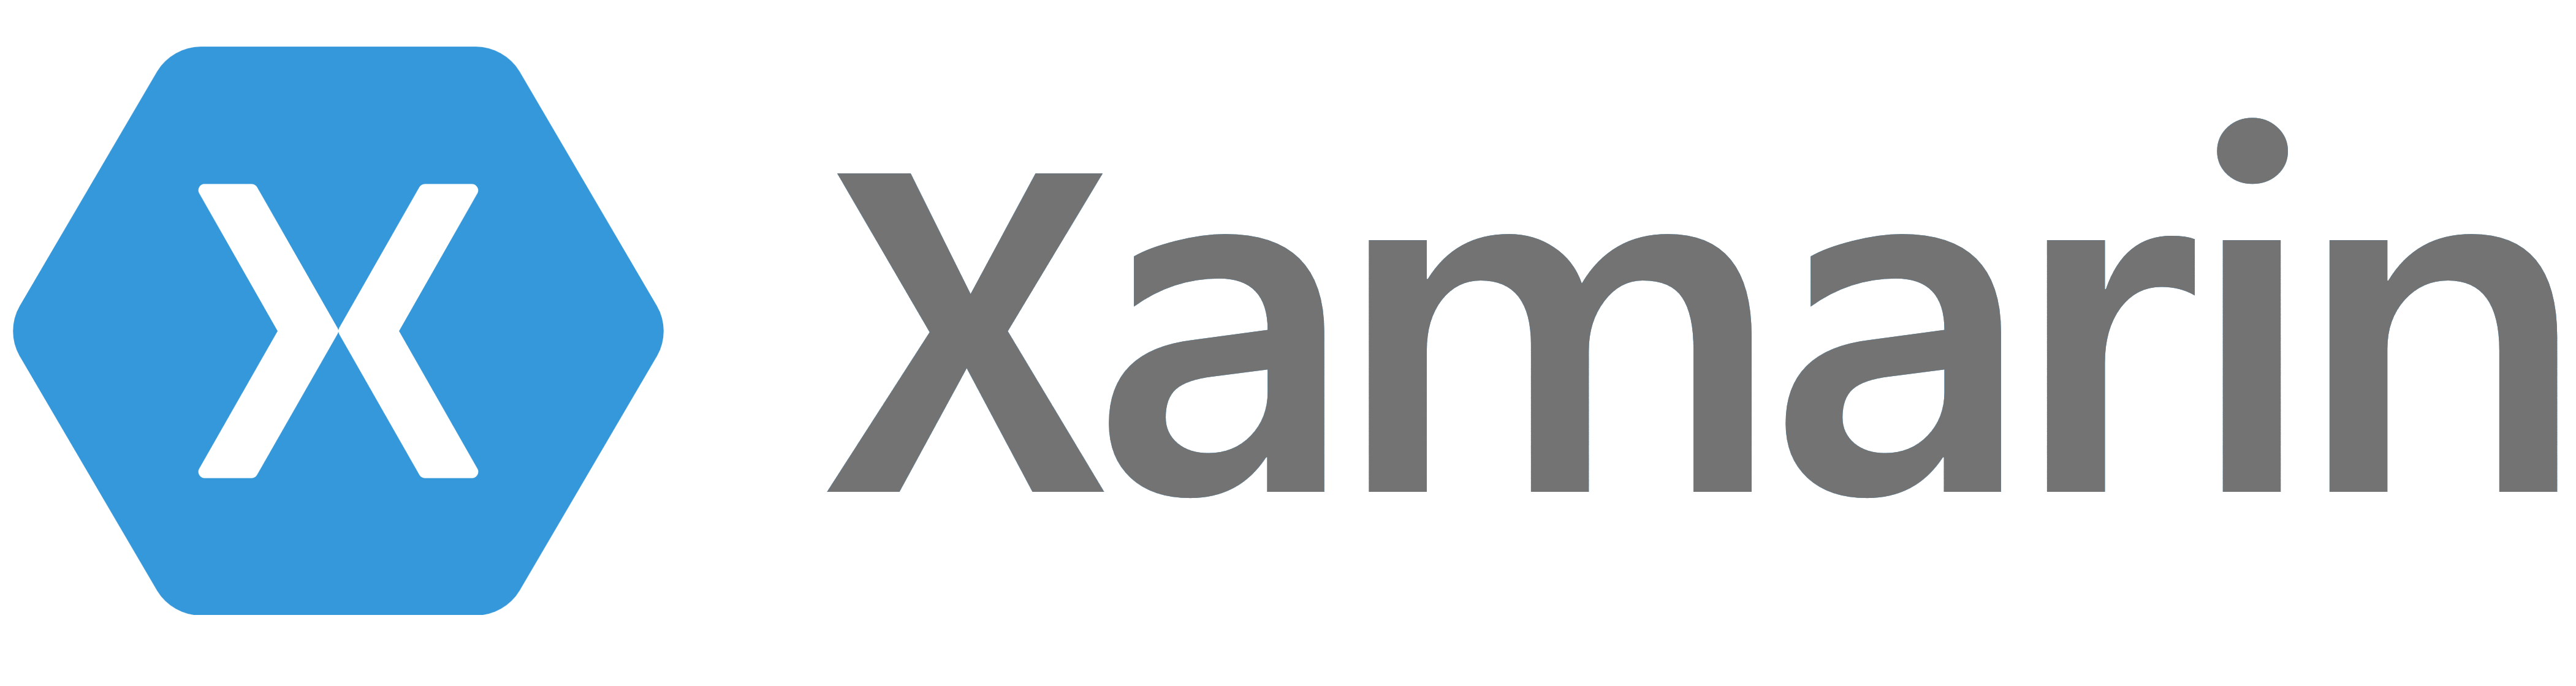 Xamarin – Logos Download